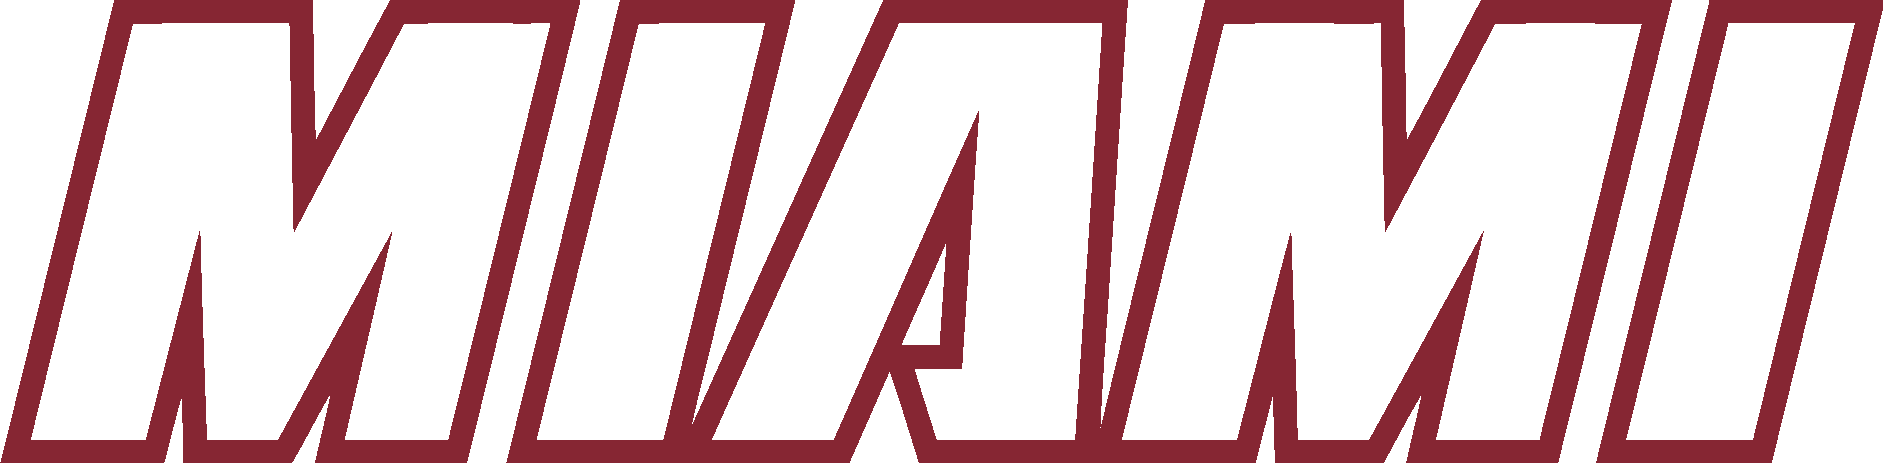 Miami Heat word Logo Vector